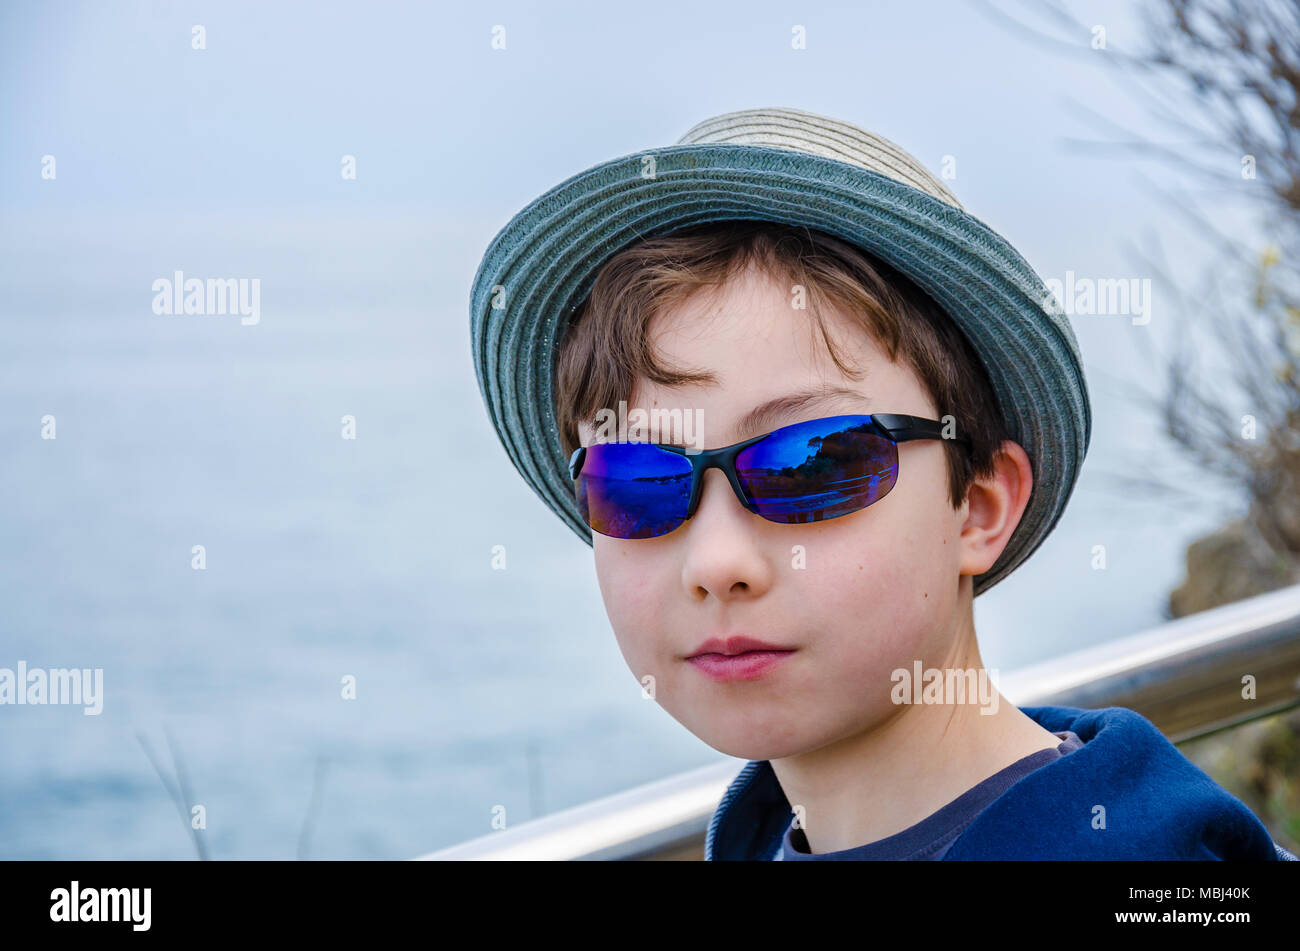 Le portrait d'un garçon de 8 ans, portant des lunettes et un chapeau de soleil. Banque D'Images